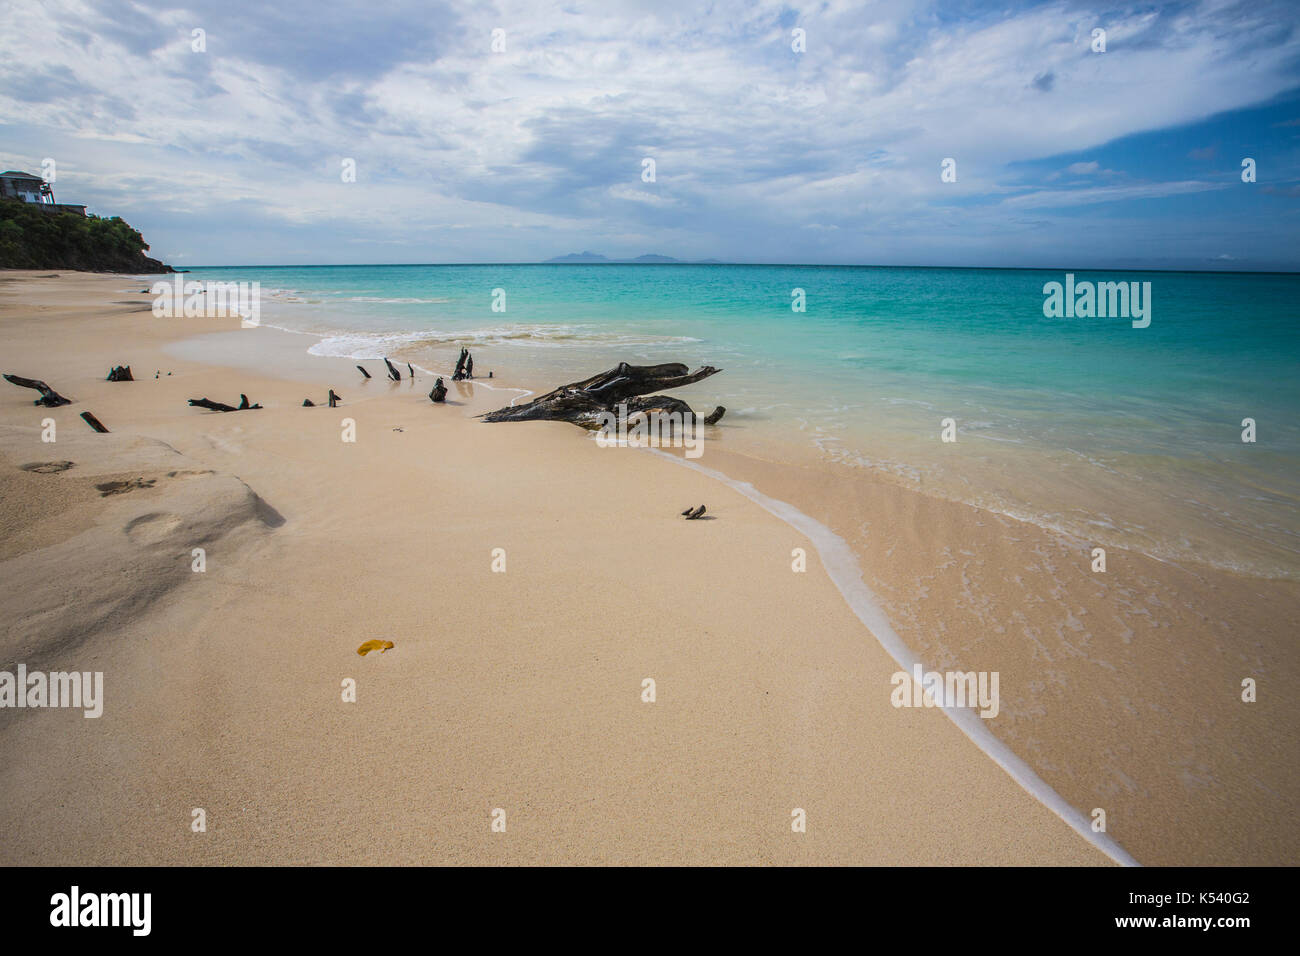 Das türkisfarbene Meer an Ffryes Beach, Antigua und Barbuda Stockfoto